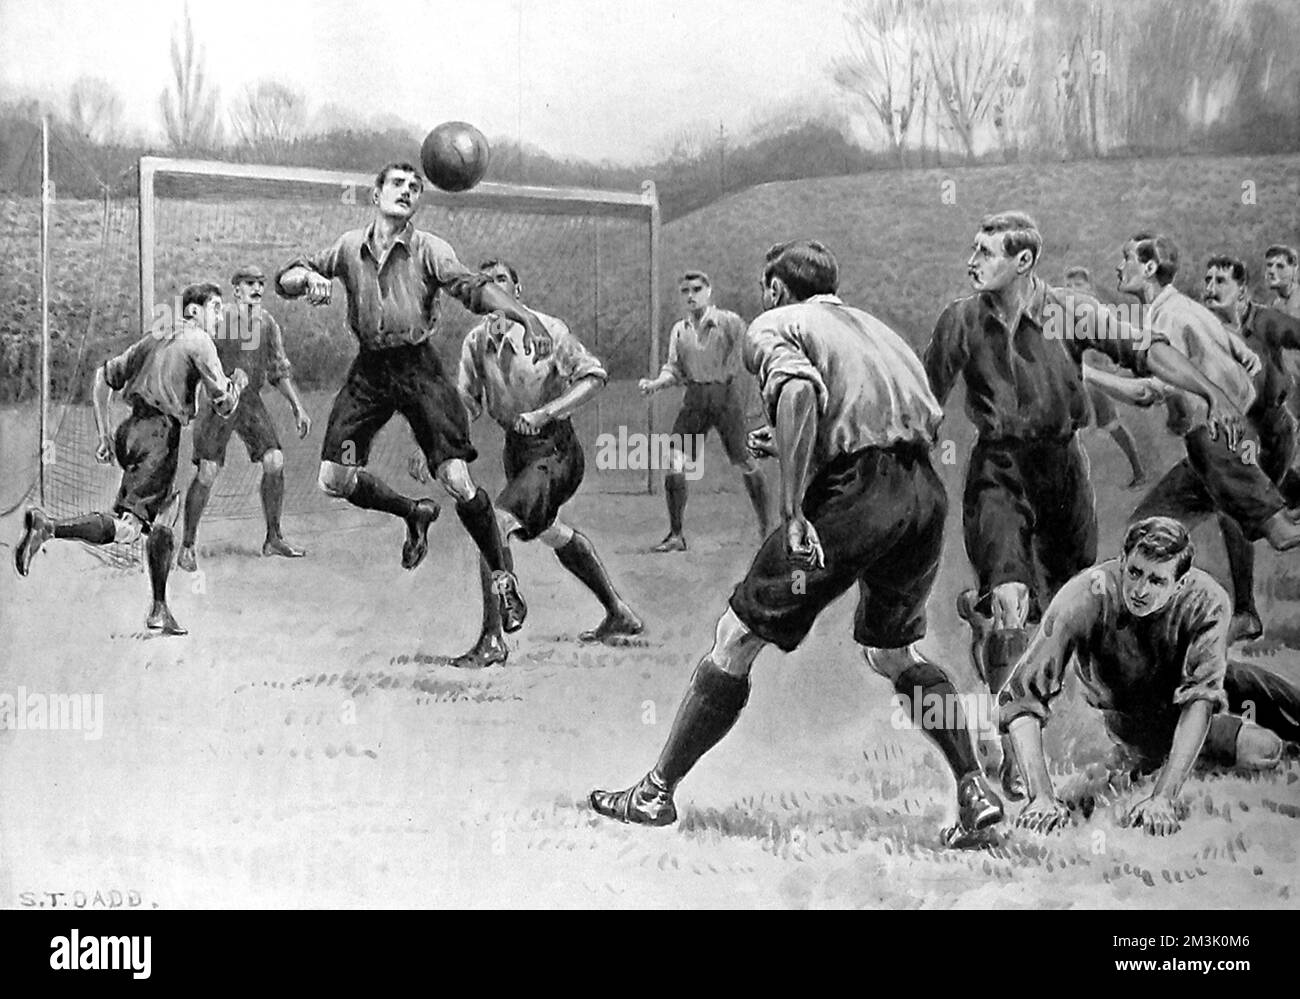 Der Verteidiger des Derby County hat den Ball frei, als Bury während der F.A. angreift Cup-Finale, 18.. April 1903. Dieses Spiel wurde im Crystal Palace Stadion gespielt und führte dazu, dass Bury 6:0 gewann. Ein solcher Sieg war nicht ganz zu erwarten, da Derby sein vorheriges Treffen gewonnen hatte, nur 3 Monate vorher, 2-0. 1903 Stockfoto